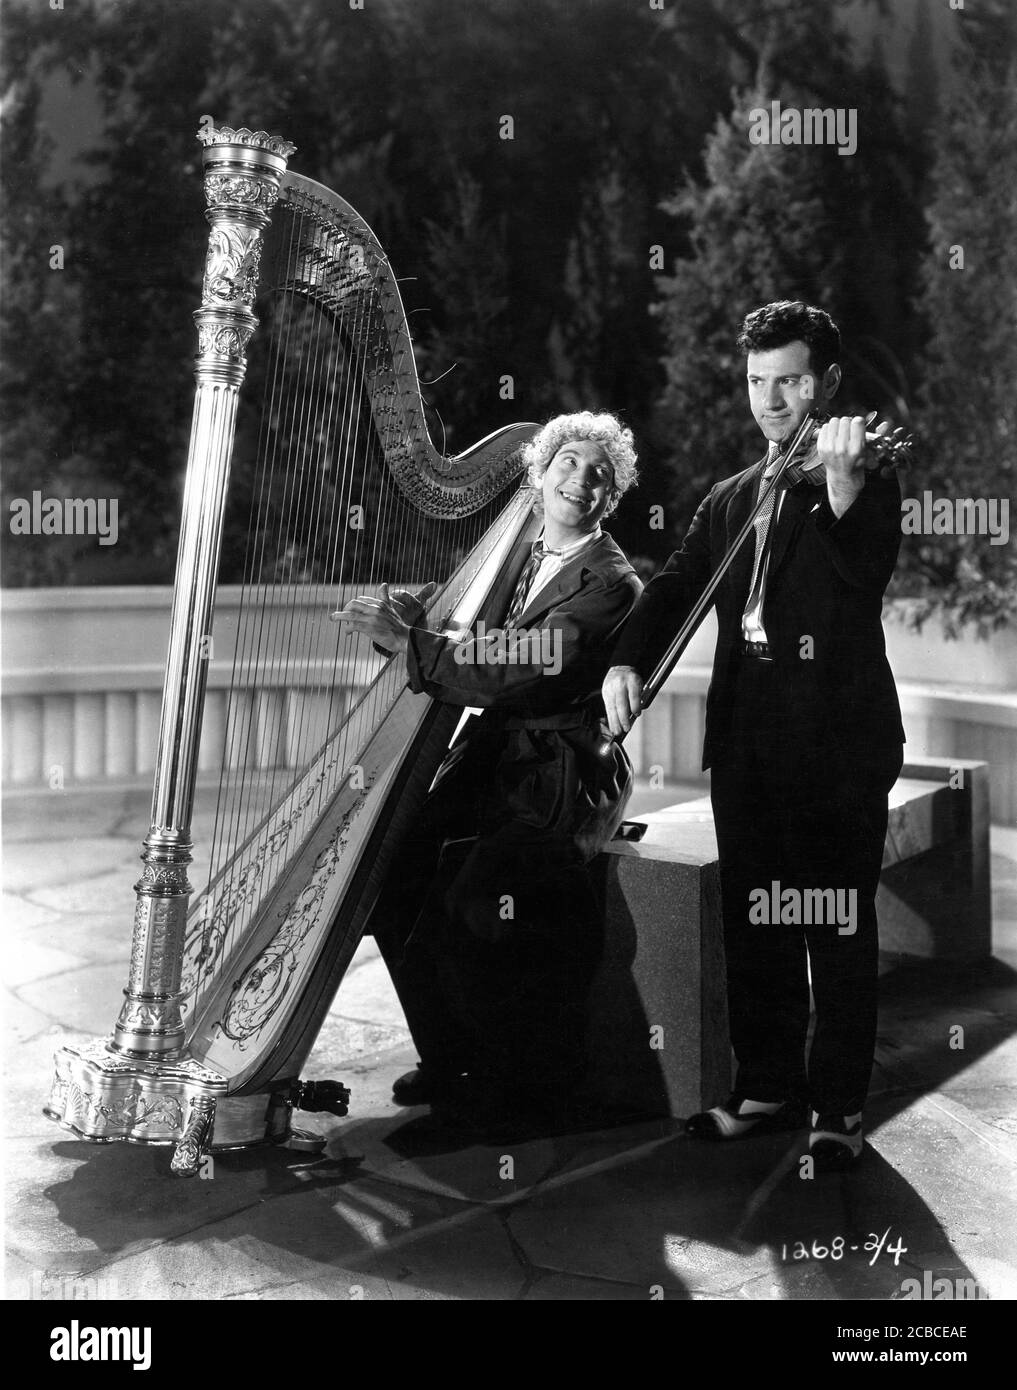 HARPO MARX joue sa harpe accompagnée d'un violoniste sur une scène candide au Paramount Astoria Studios de New York pendant le tournage de PAPILLOTES ANIMAUX 1930 réalisateur VICTOR HEERMAN basé sur une pièce musicale de George S. Kaufman Morrie Ryskind Bert Kalmar et Harry Ruby Paramount Pictures Banque D'Images